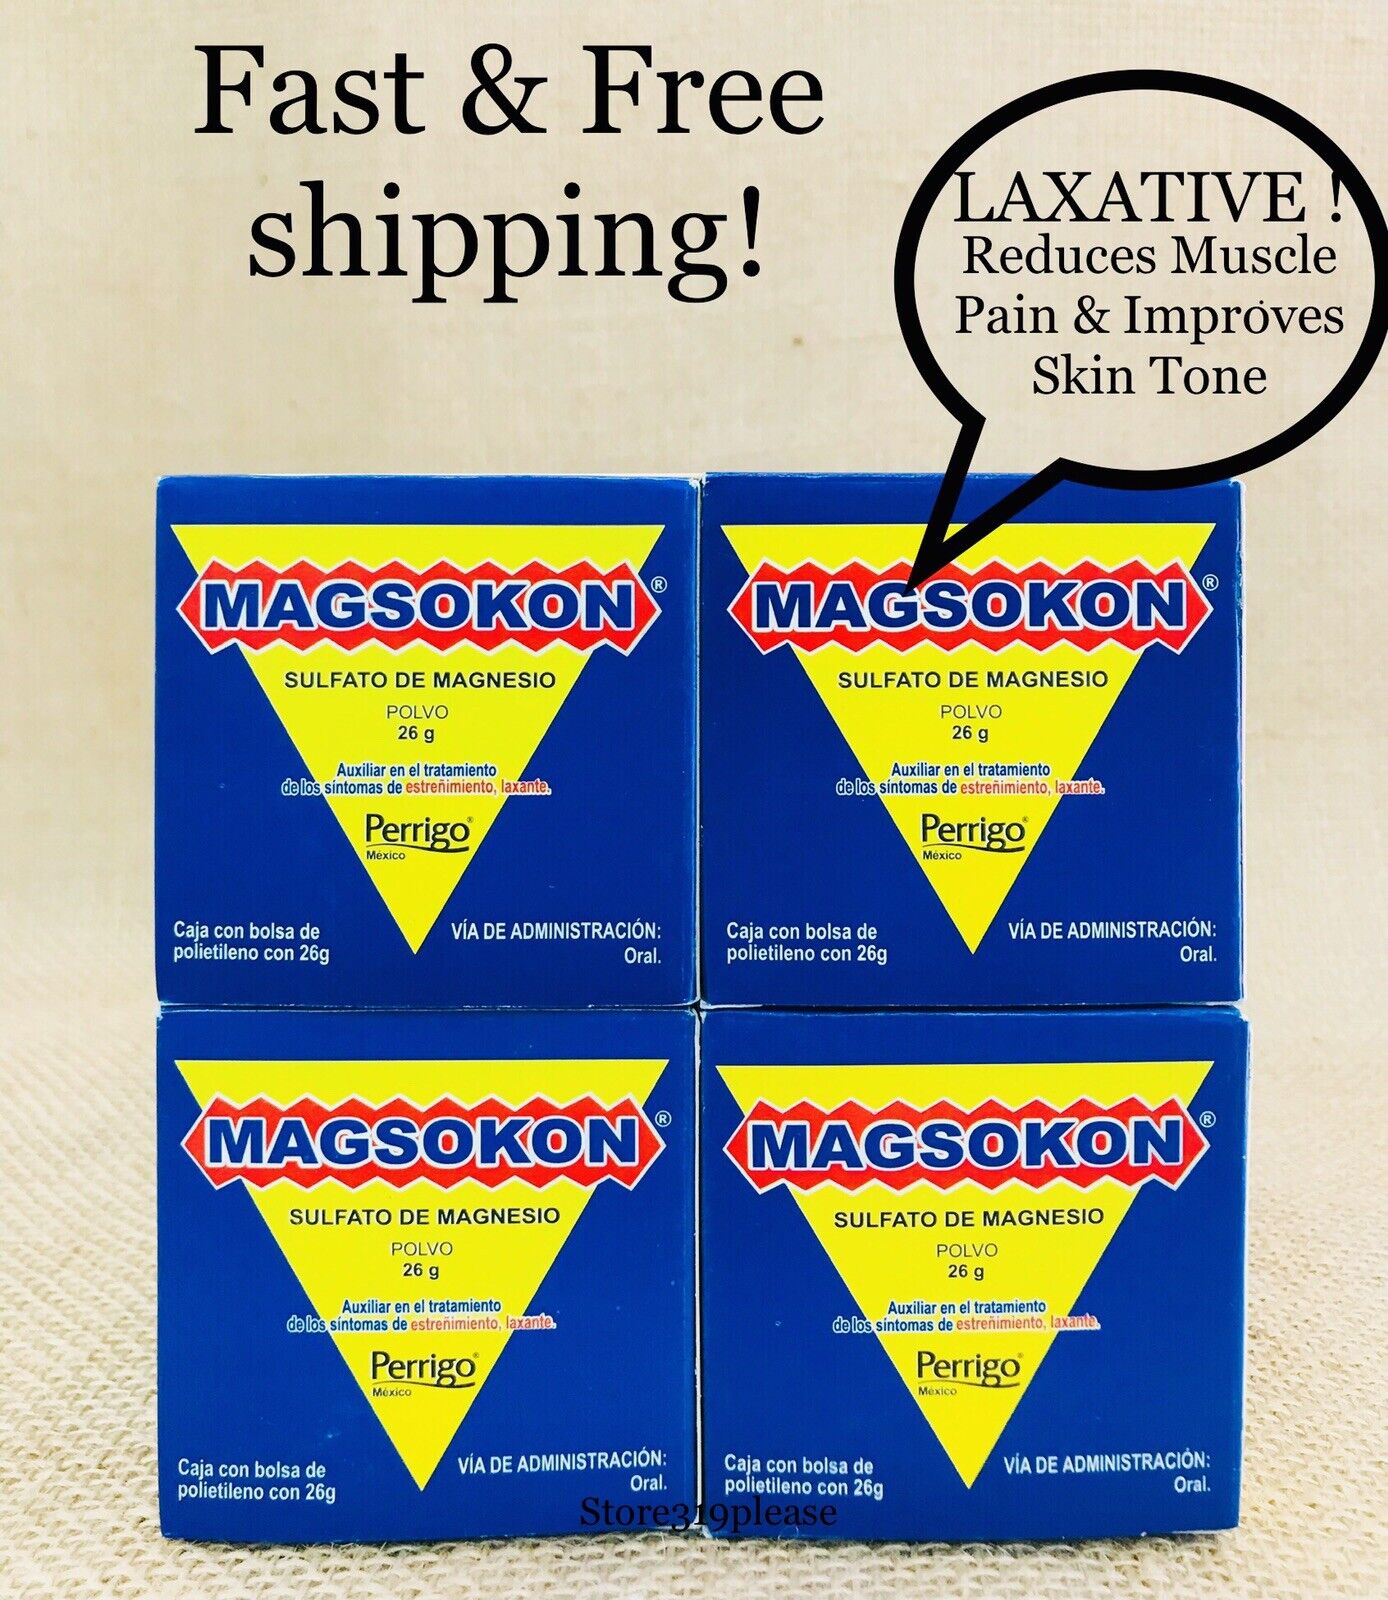 4 MAGSOKON  SULFATO DE MAGNESIO  26g / Magnesium Sulfate /  Laxante Salino  MAGSOKON 7501109763986